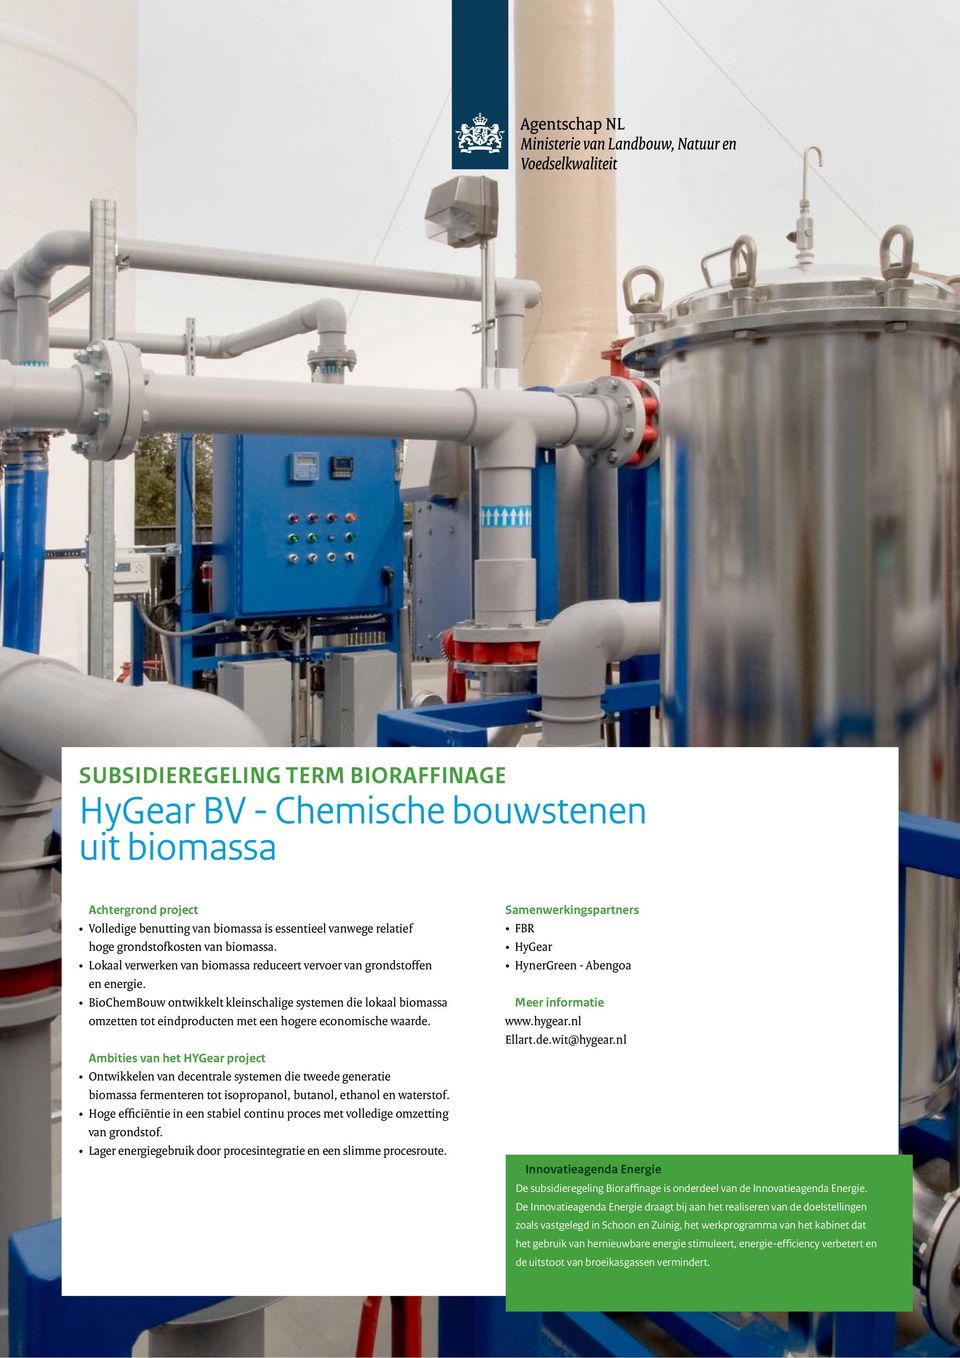 BioChemBouw ontwikkelt kleinschalige systemen die lokaal biomassa omzetten tot eindproducten met een hogere economische waarde.